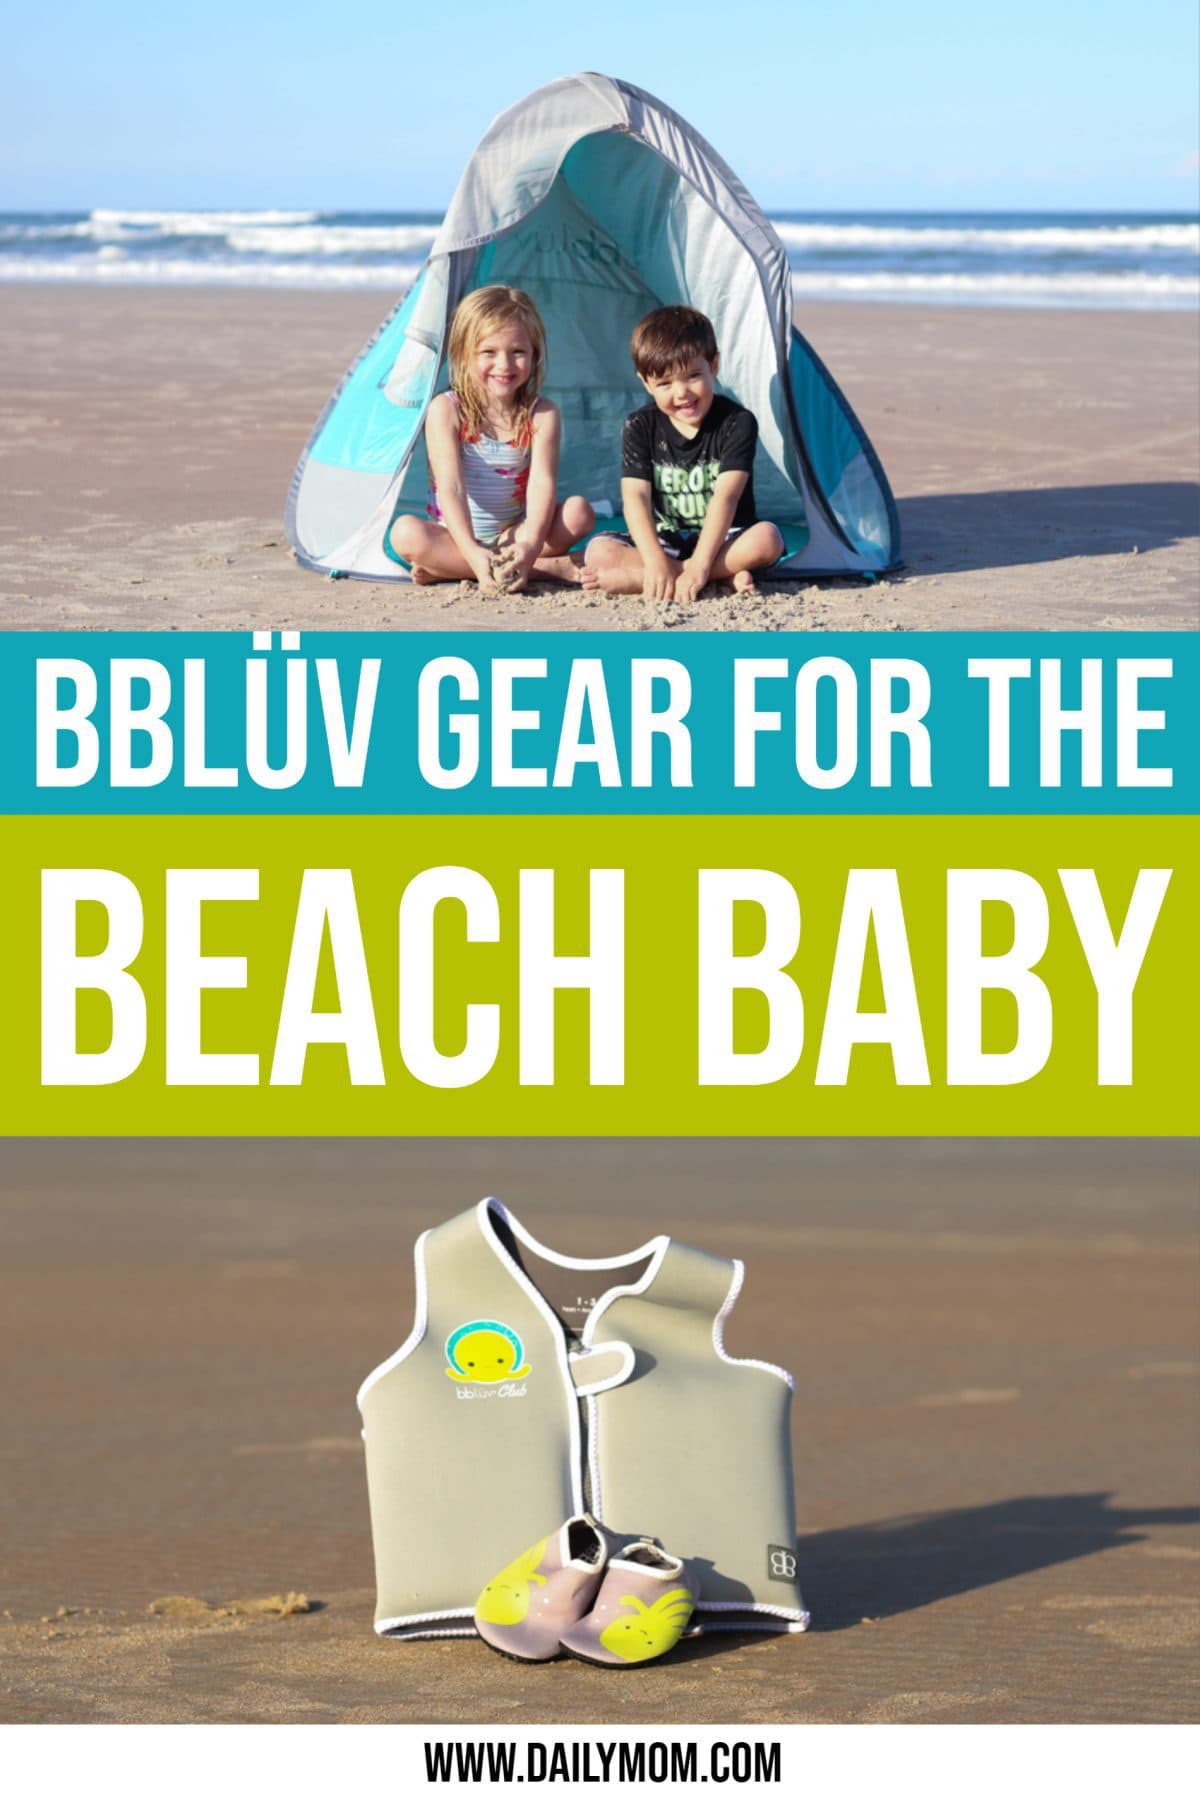 Daily Mom Parent Portal BblÜv Gear For The Beach Baby